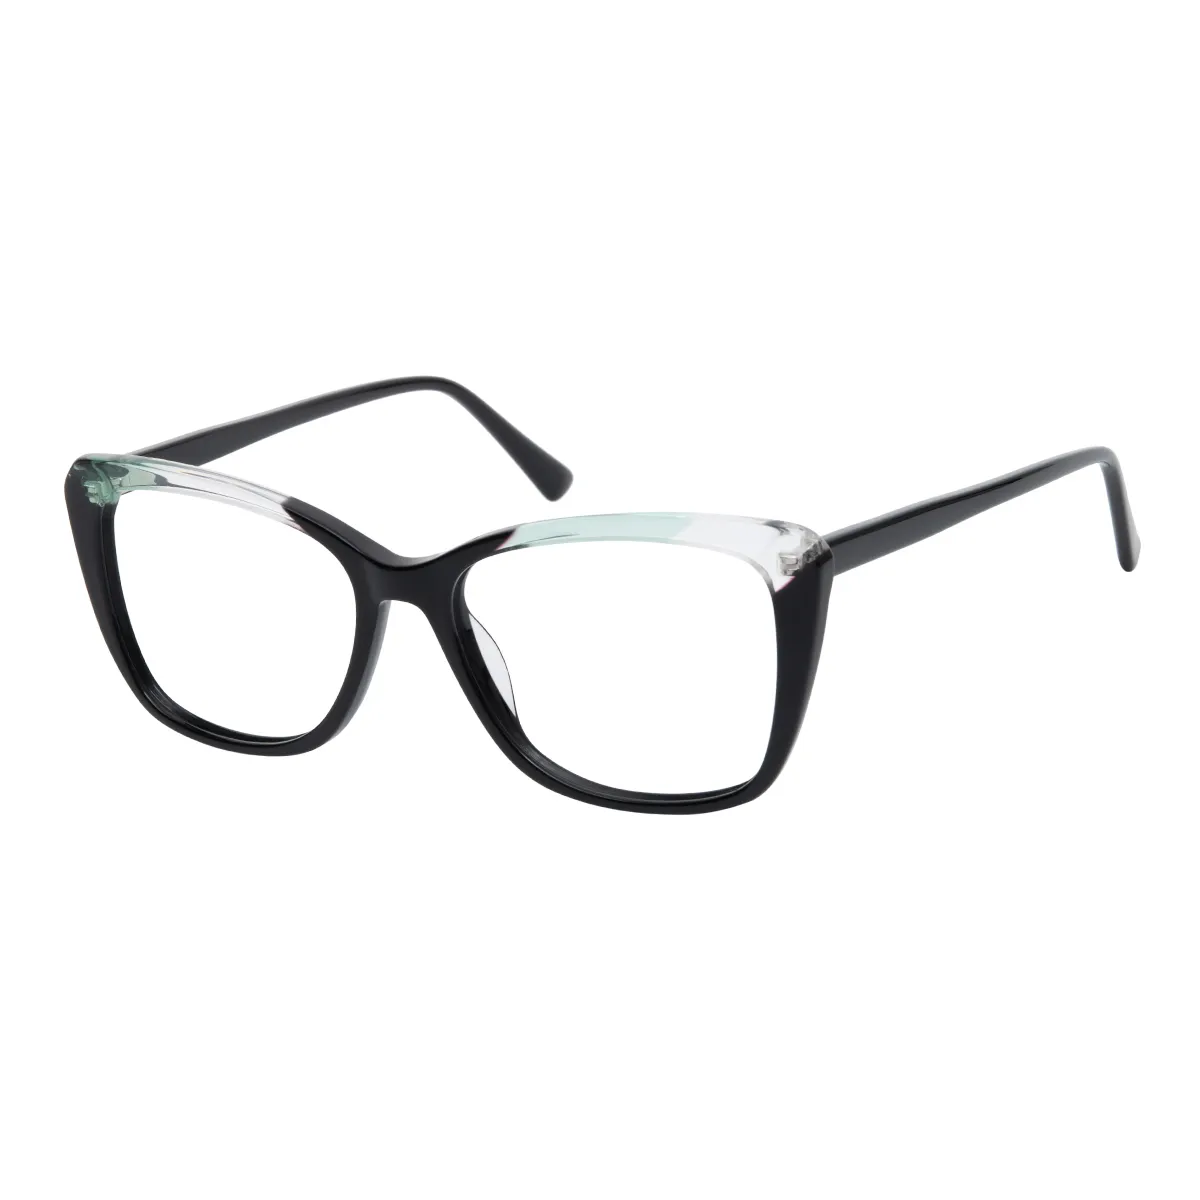 Reese - Square Black Glasses for Women